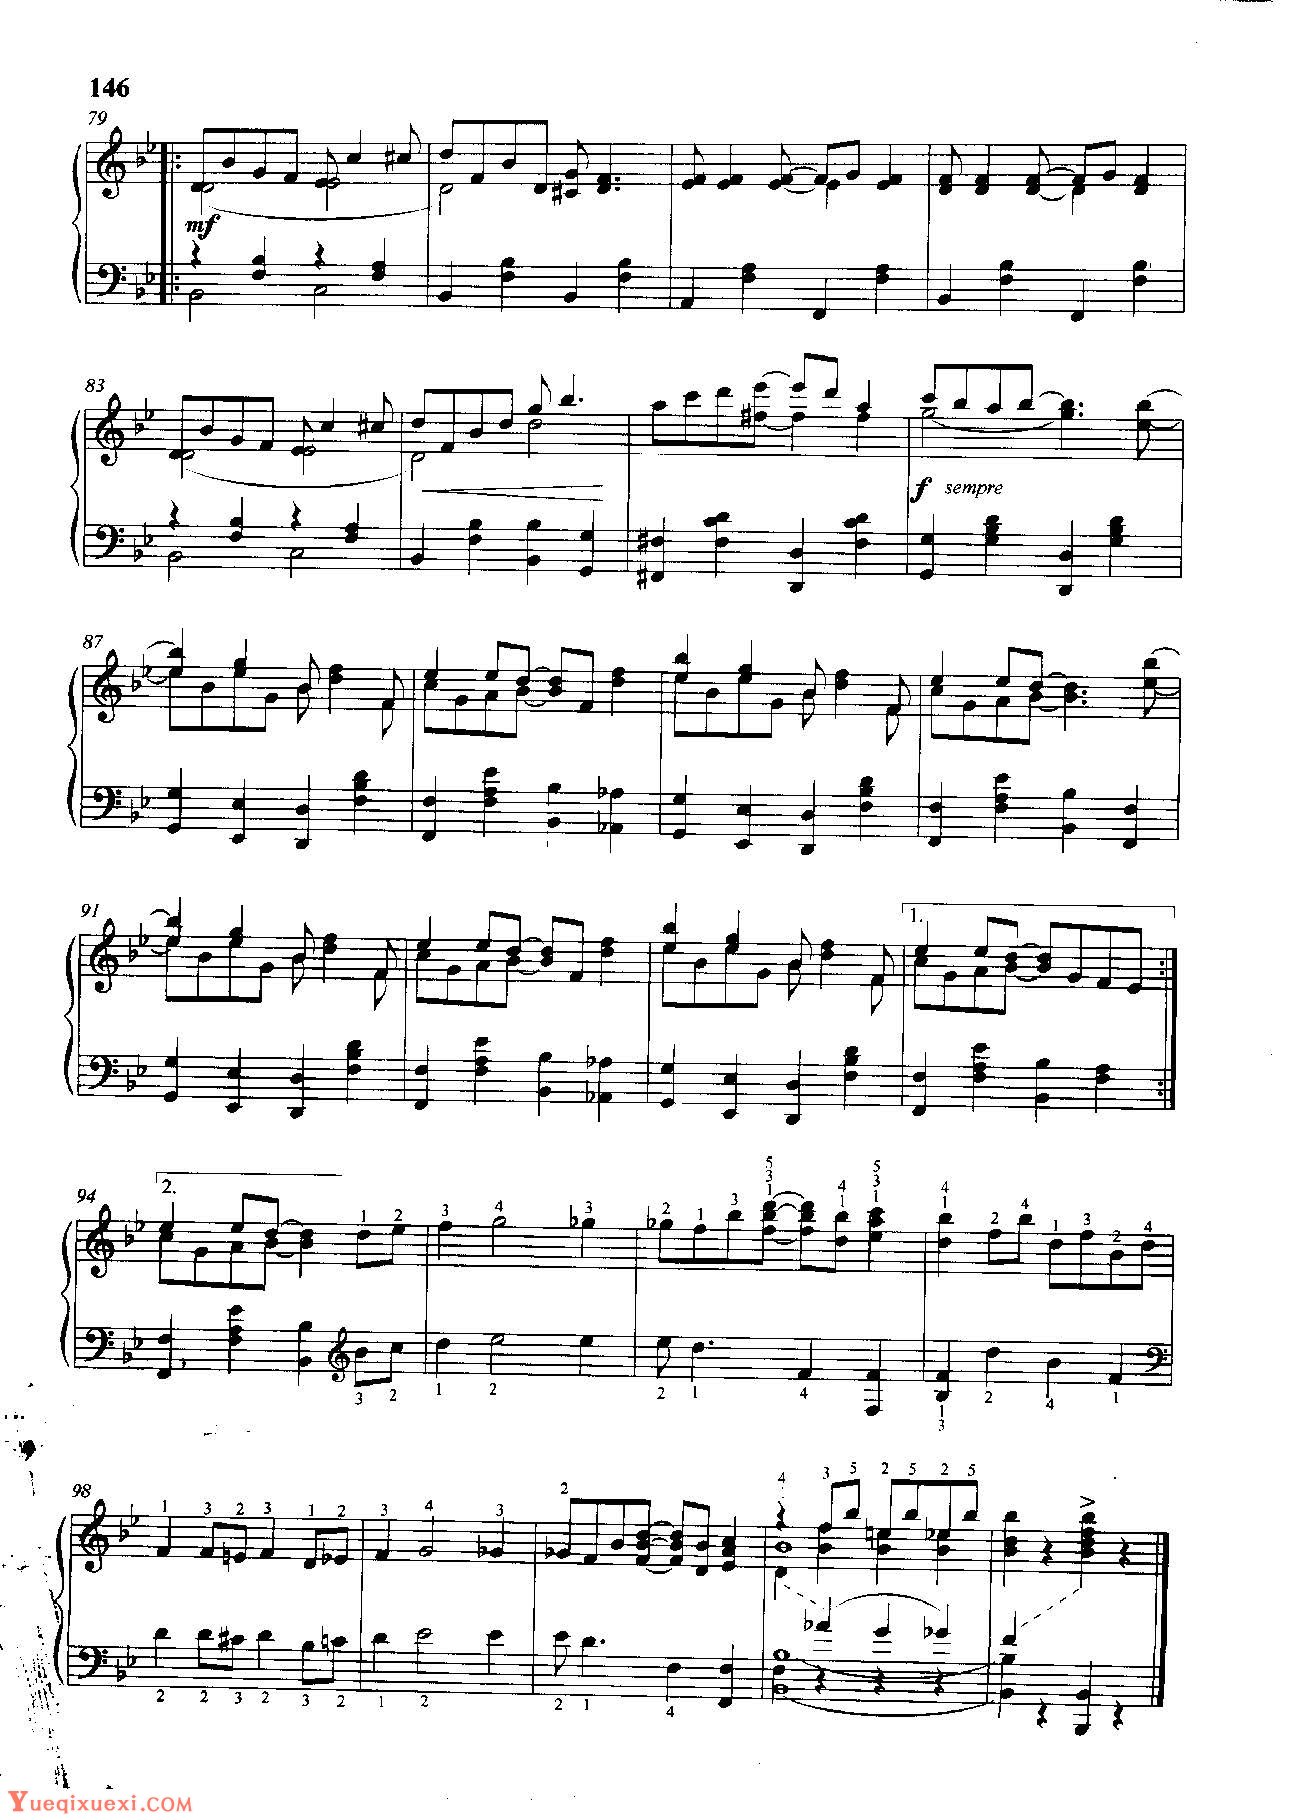 雷格泰姆钢琴乐谱《夺人心魄的雷格》雷格泰姆之王斯科特·乔普林